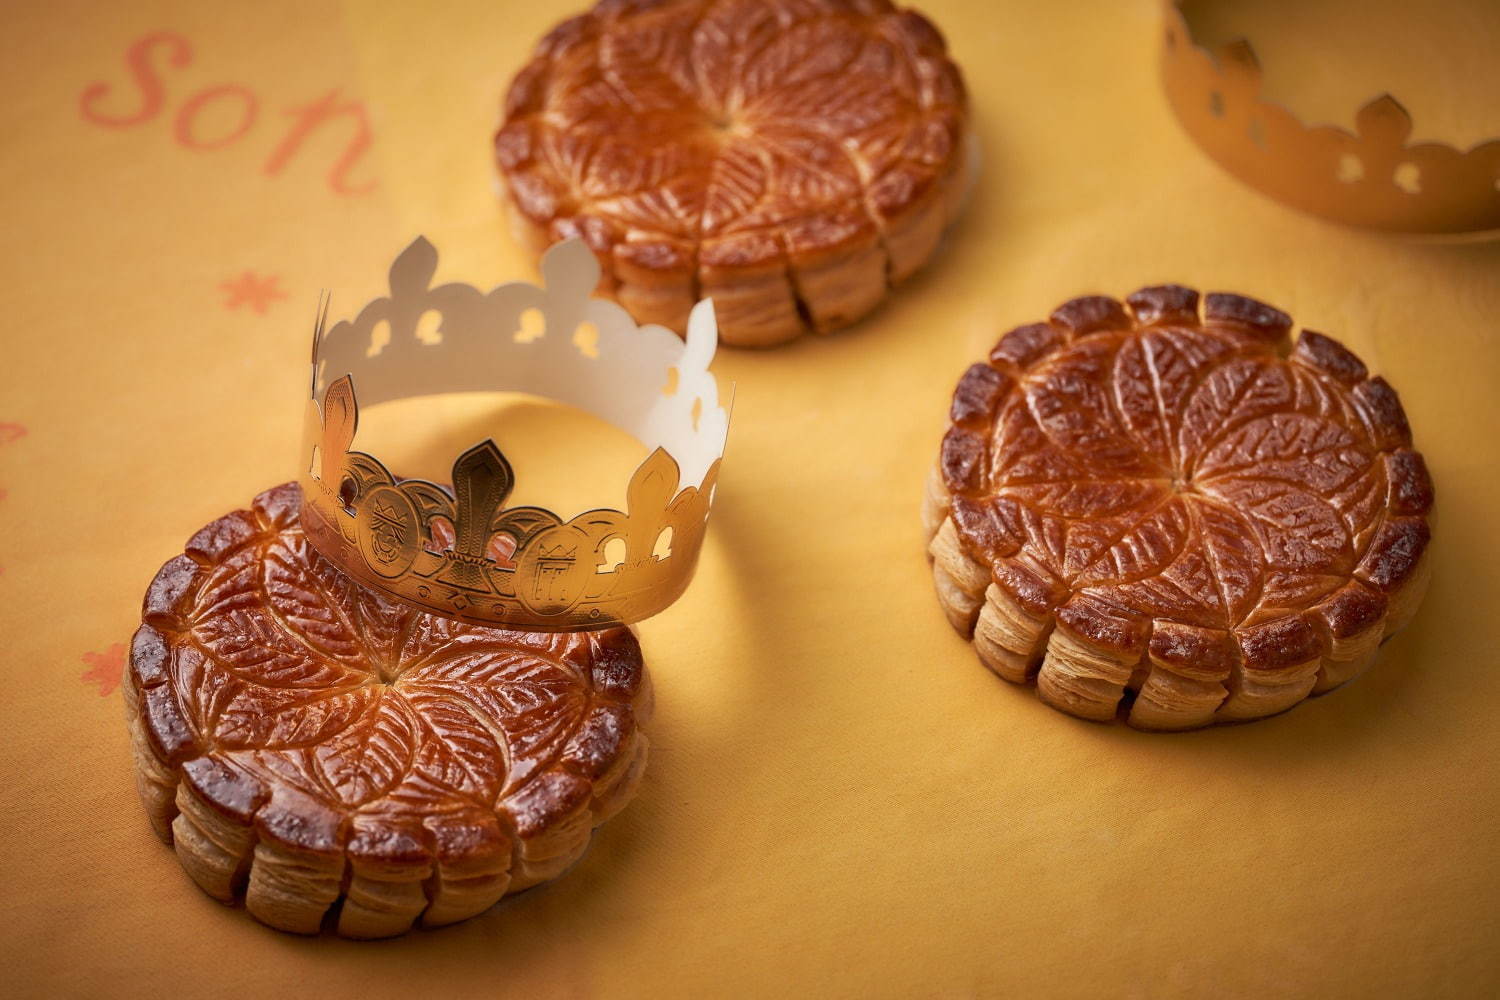 オークラ東京から新年を祝う菓子 ガレット デ ロワ バター香るサクサク食感のパイ生地 ファッションプレス